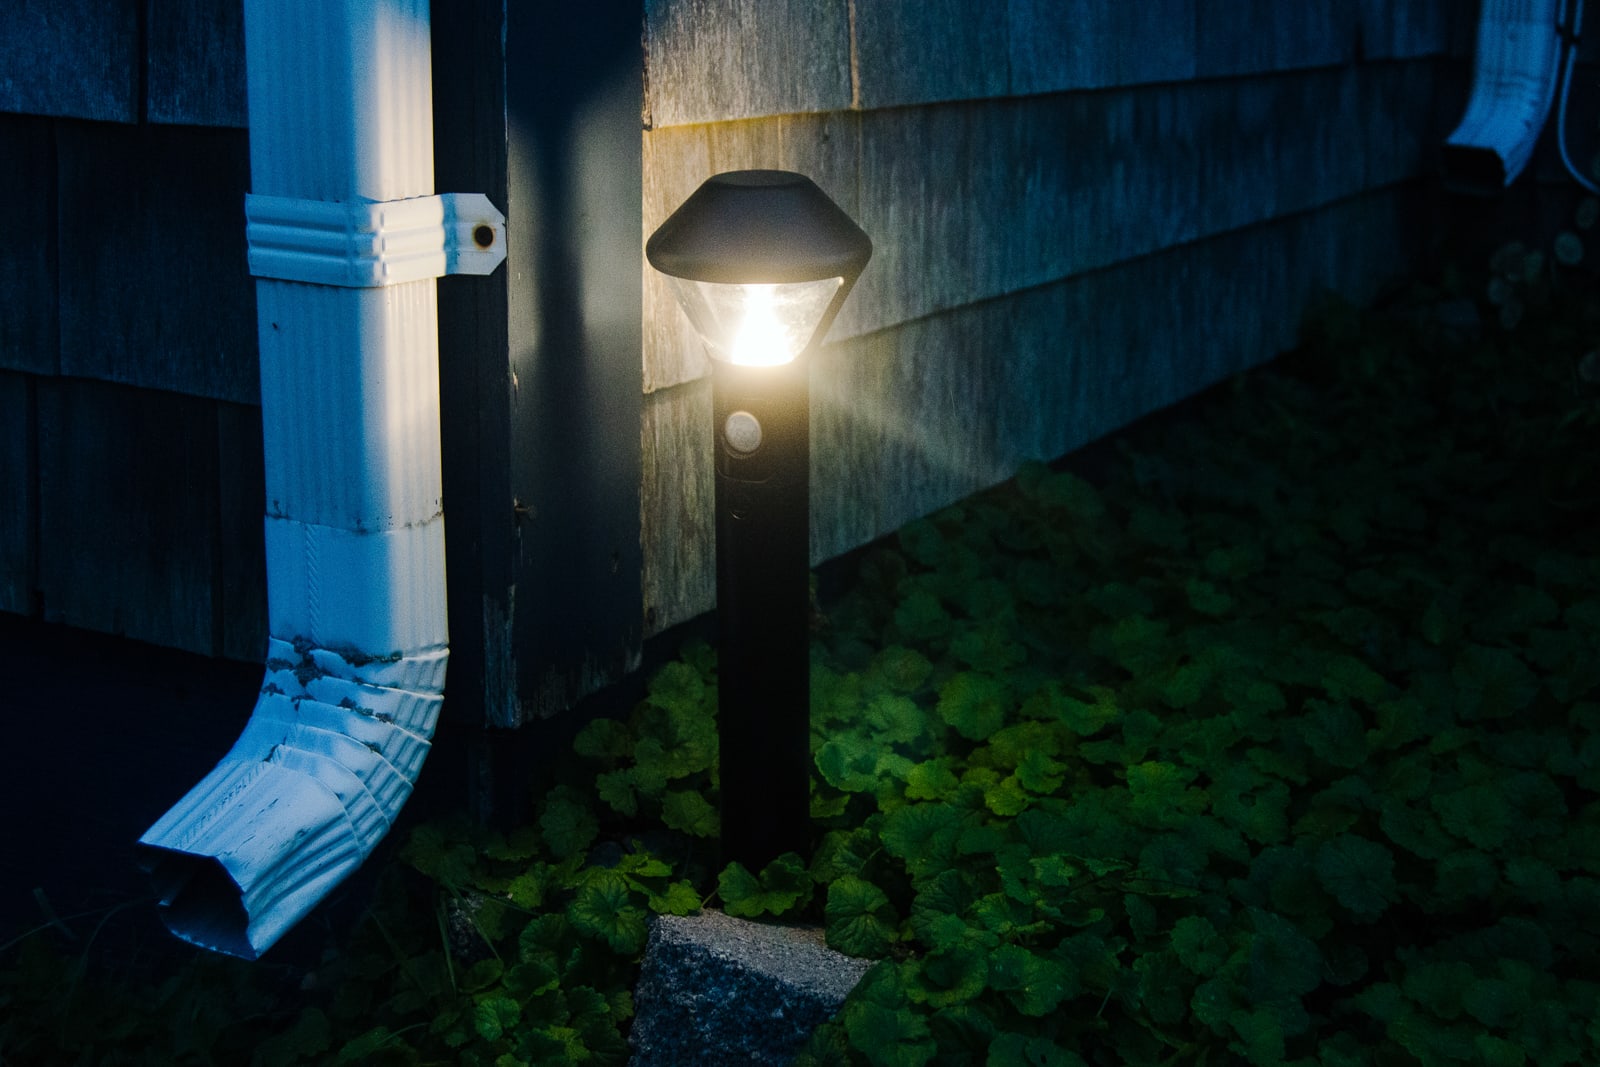 Smart outdoor lighting